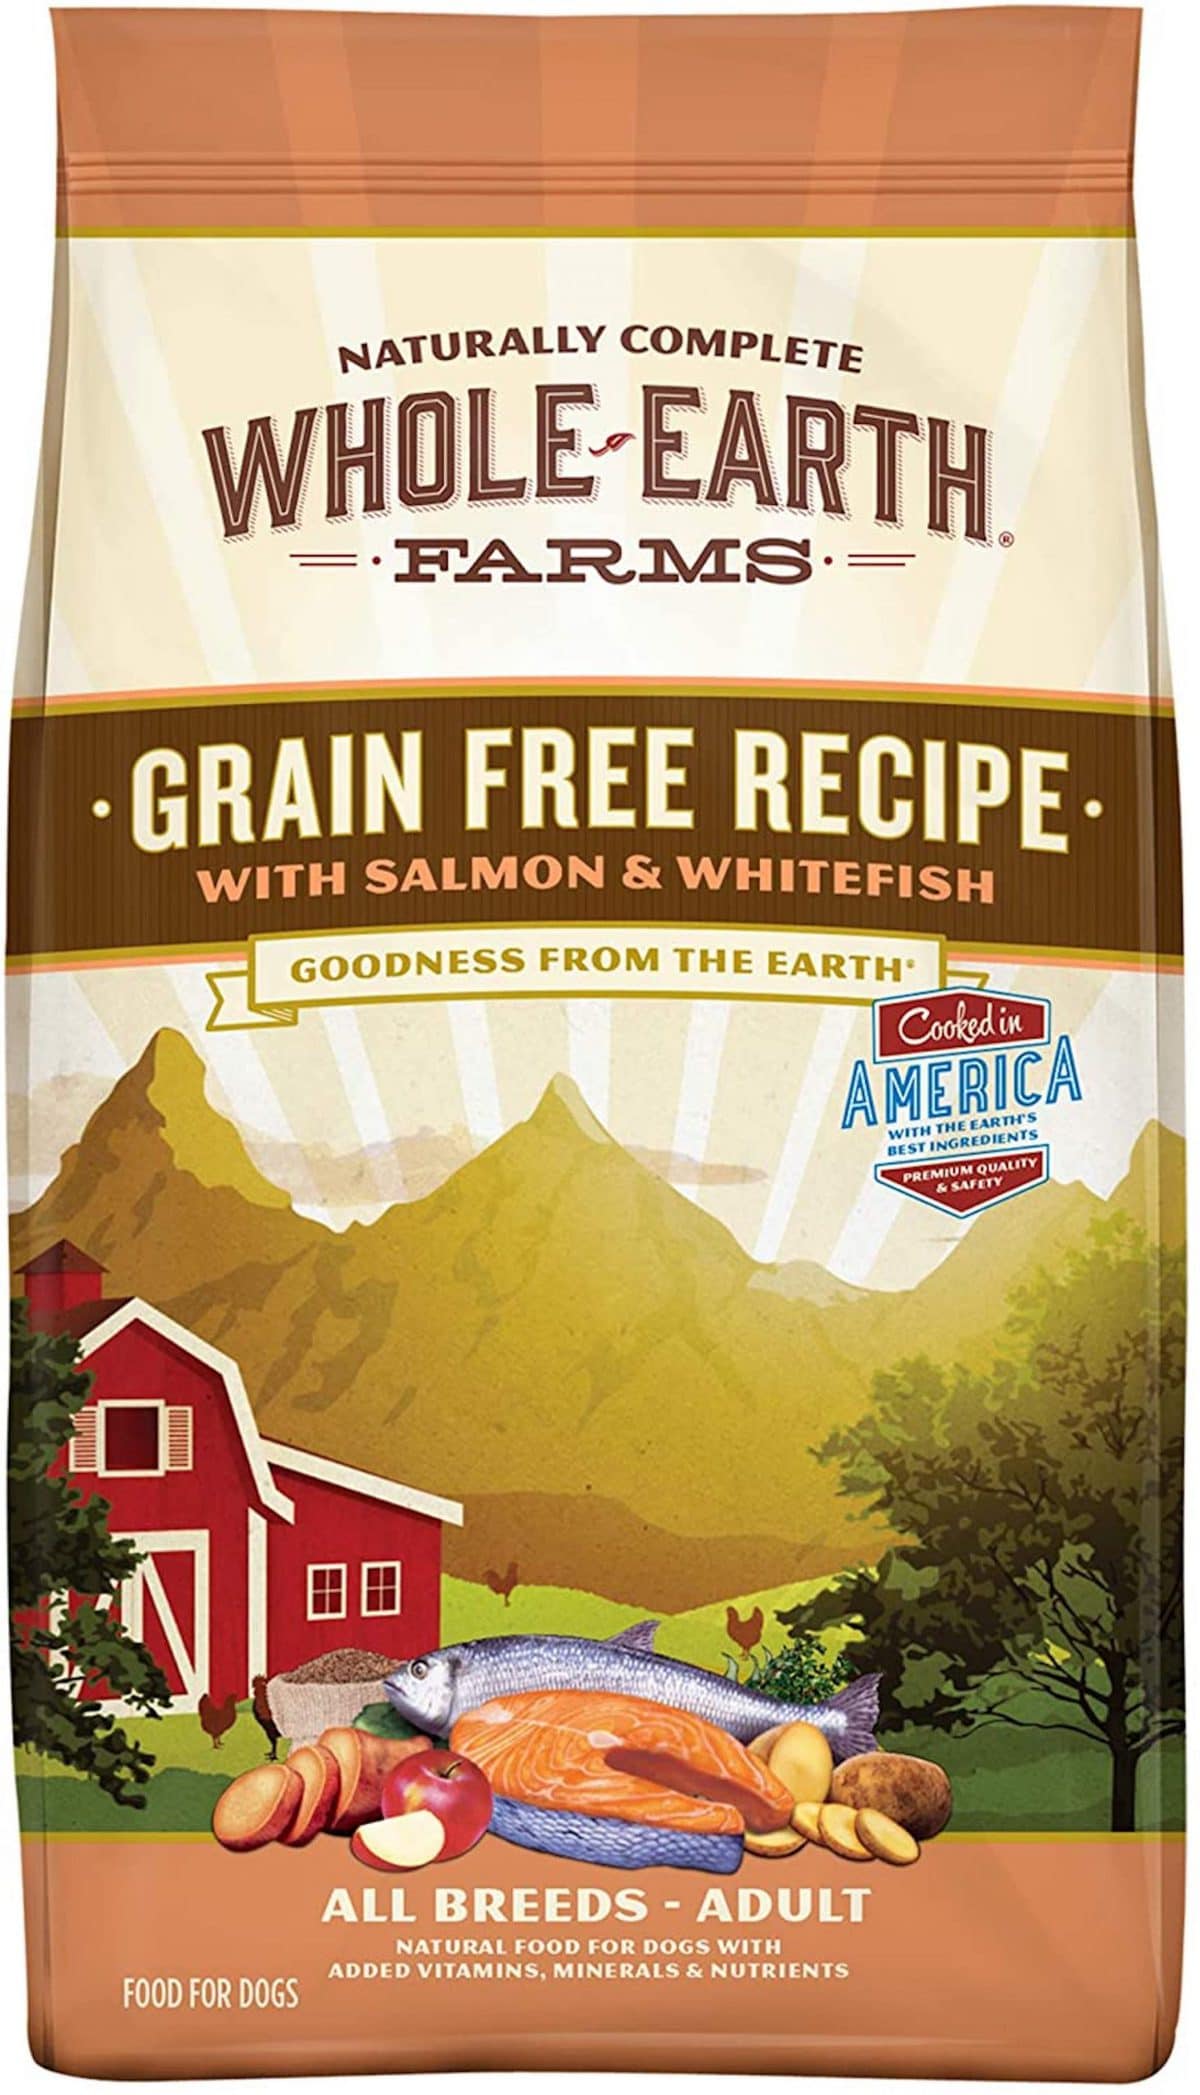 Whole Earth Farms Grain Free Recipe Dog Food